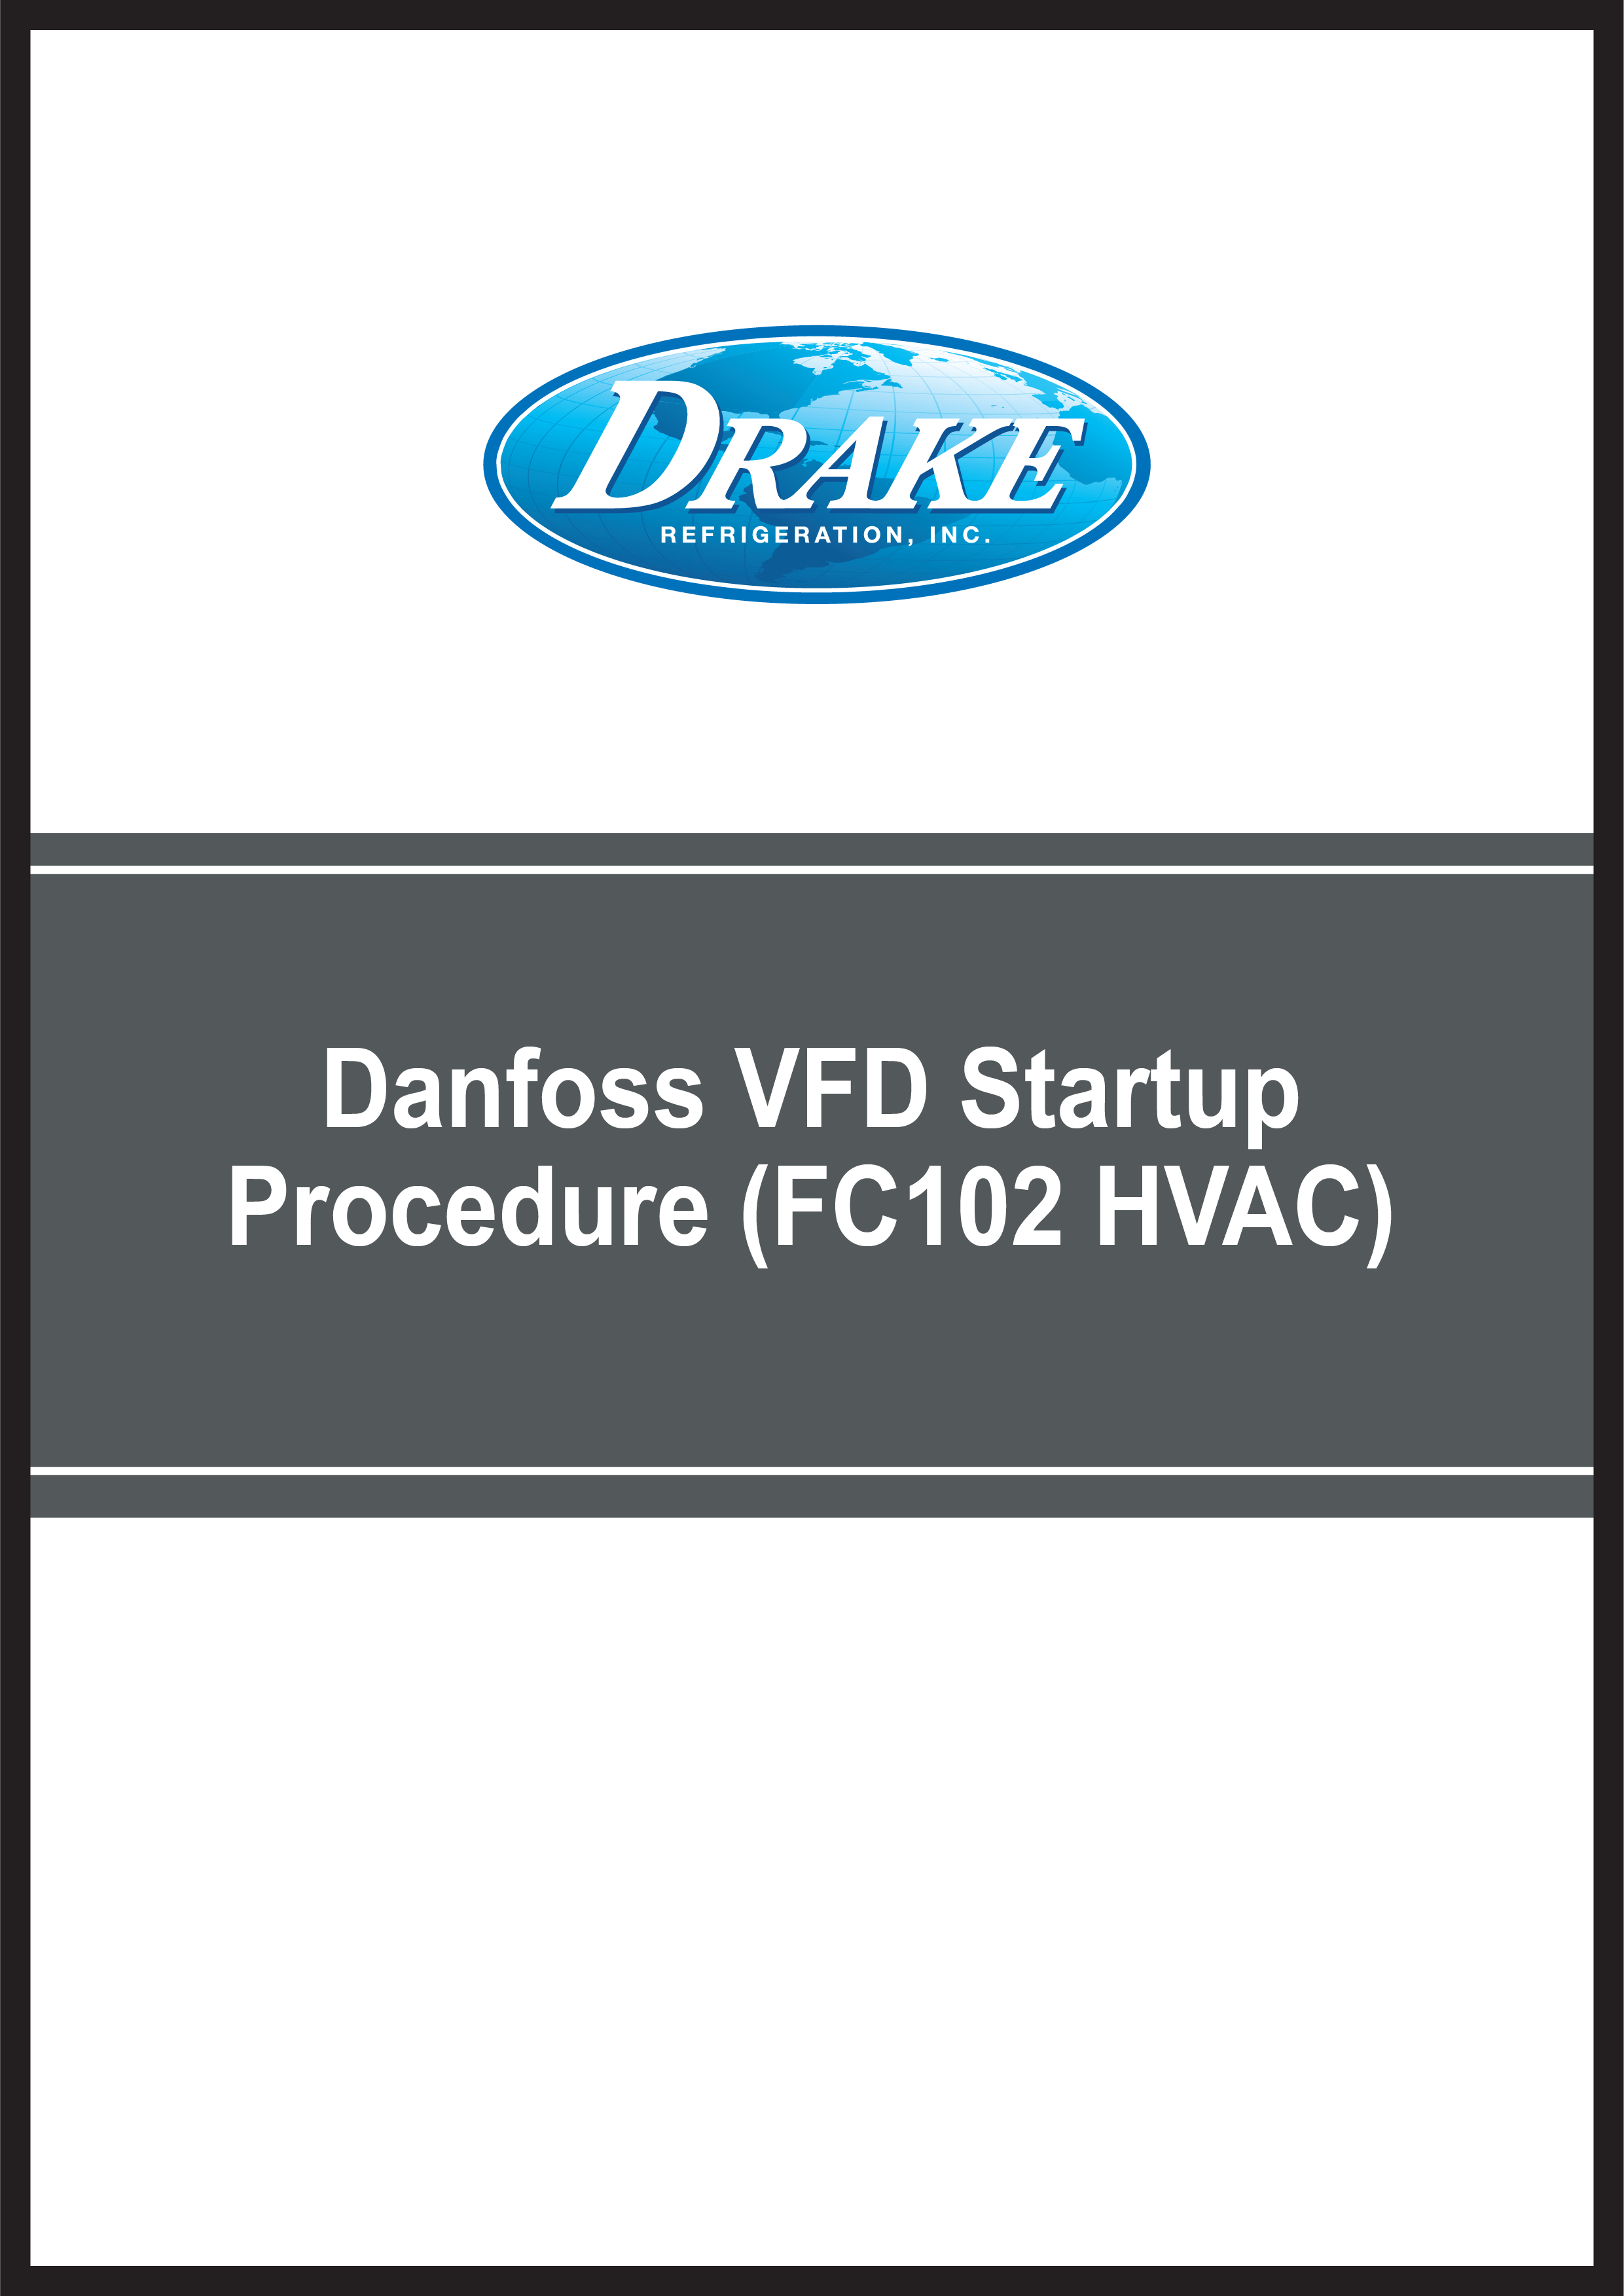 Web Template Danfoss VFD Startup Procedure (FC102 HVAC).png